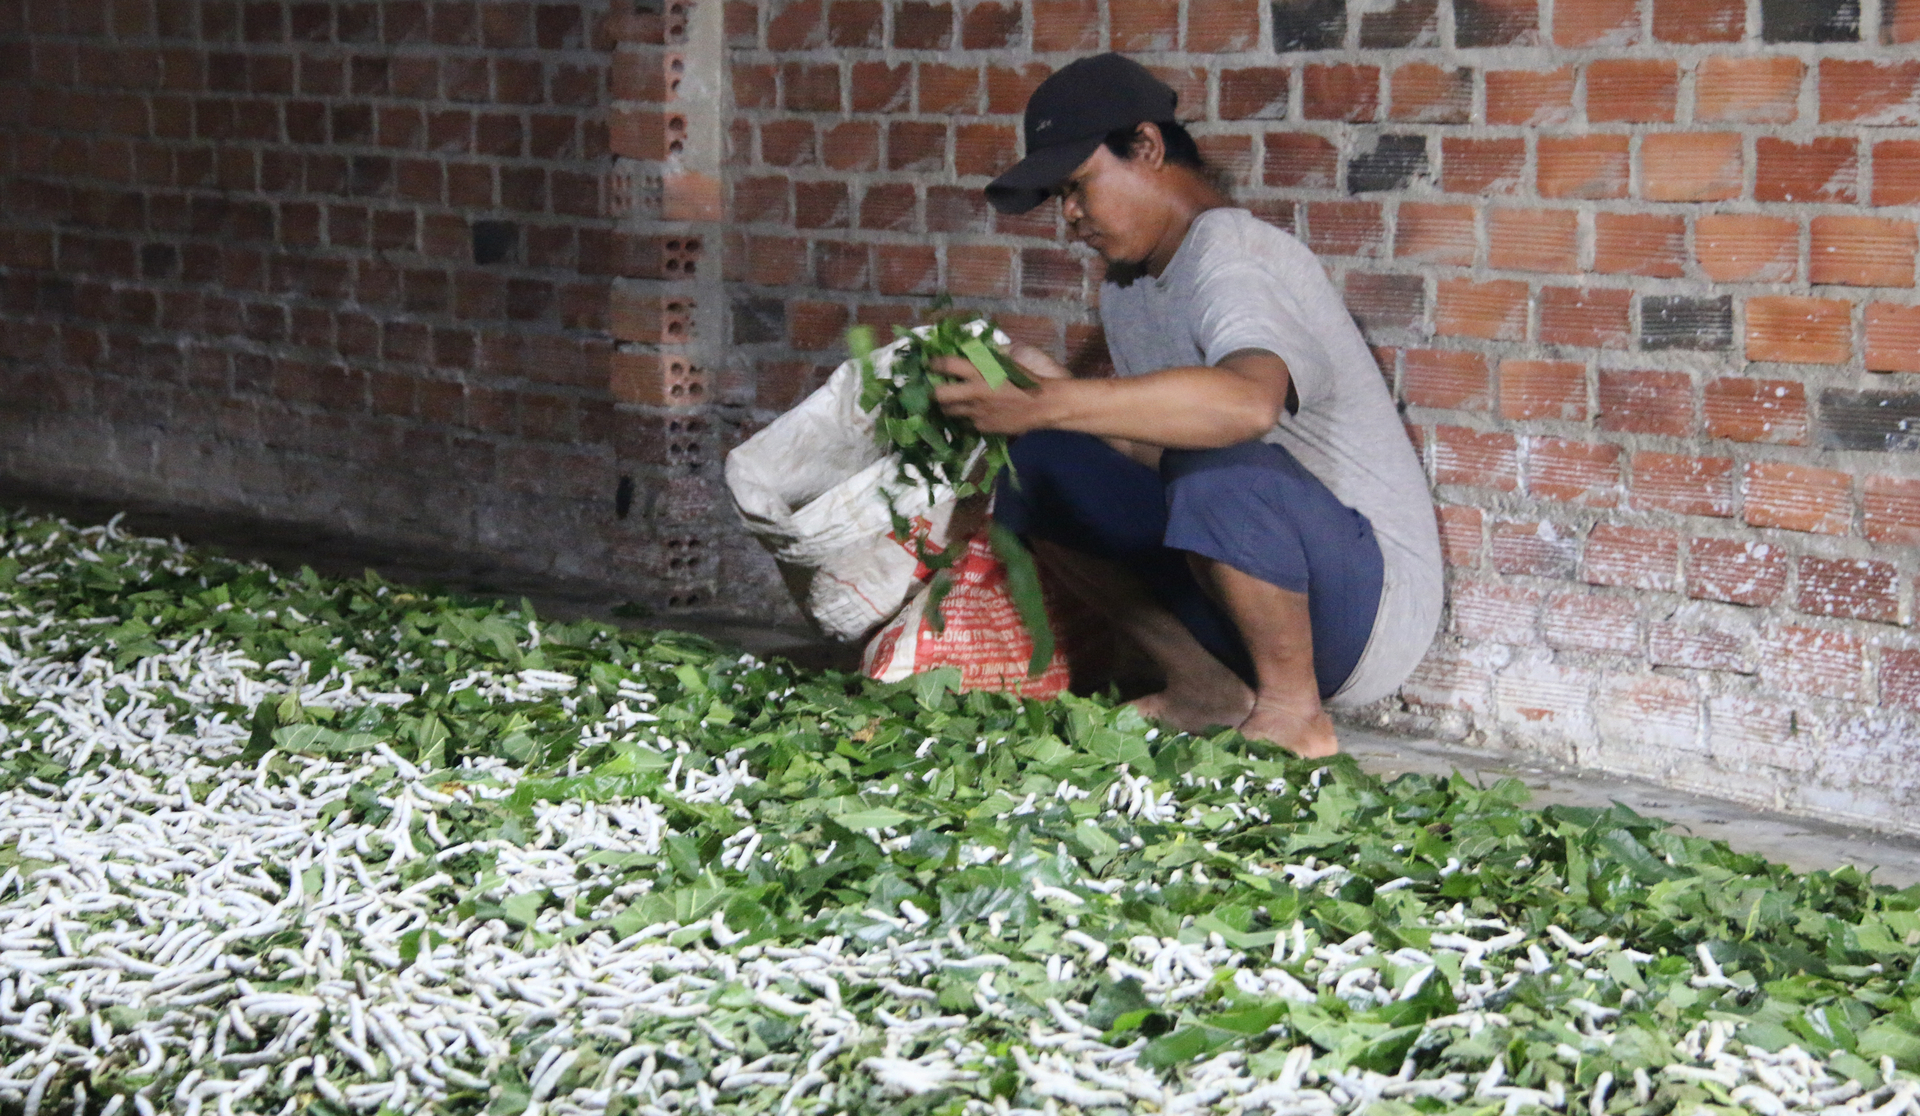 Trong thời gian tới, UBND huyện Đắk G'long sẽ nhân rộng mô hình trồng dâu nuôi tằm cho người dân tại địa phương. Ảnh: Quang Yên.